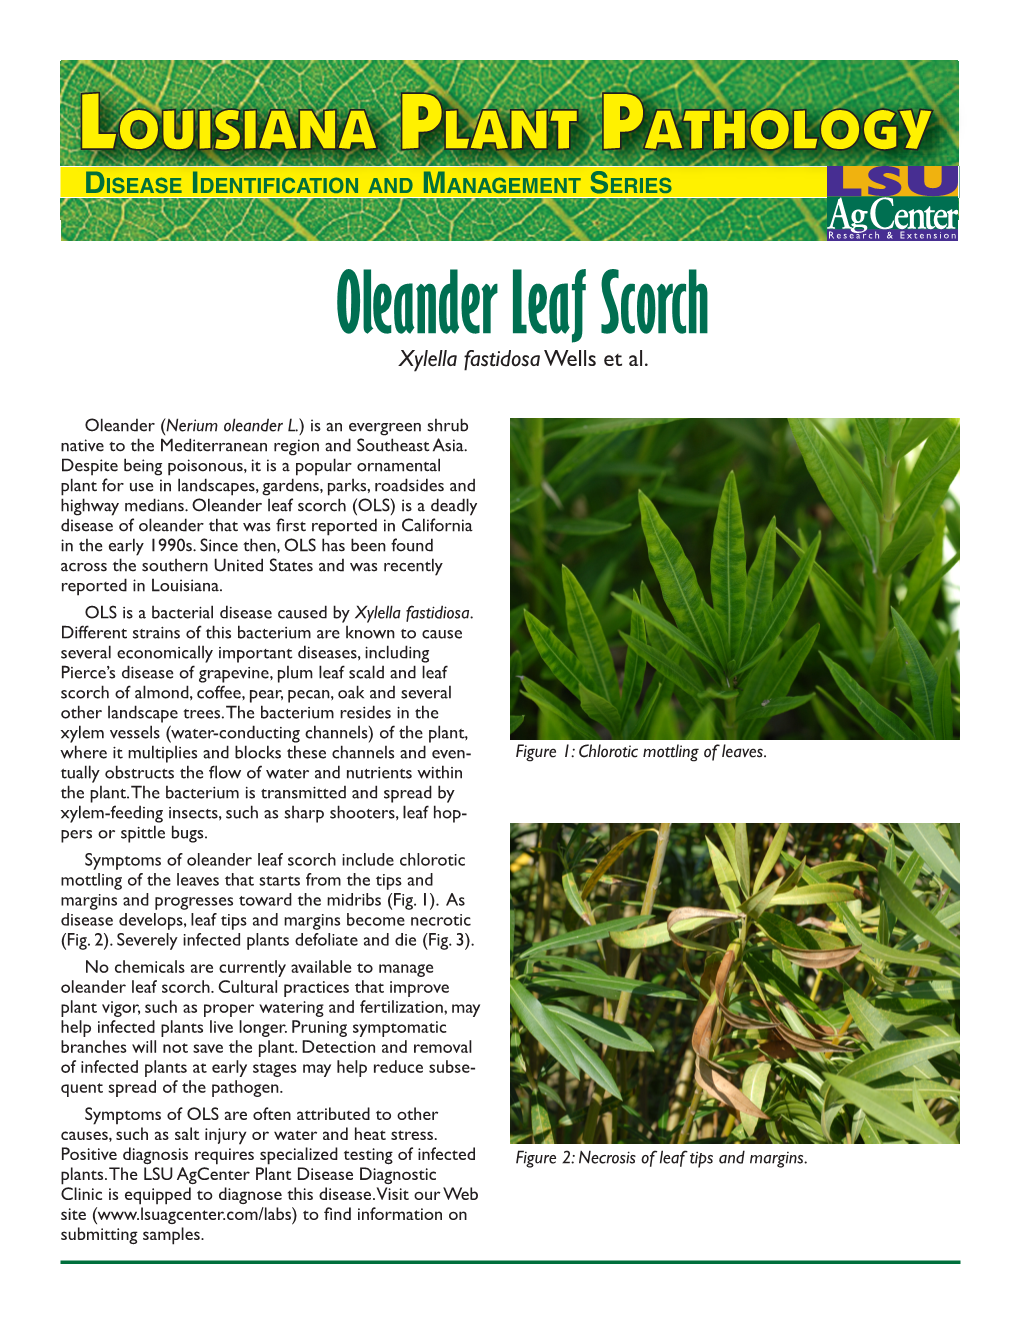 Oleander Leaf Scorch Xylella Fastidosa Wells Et Al